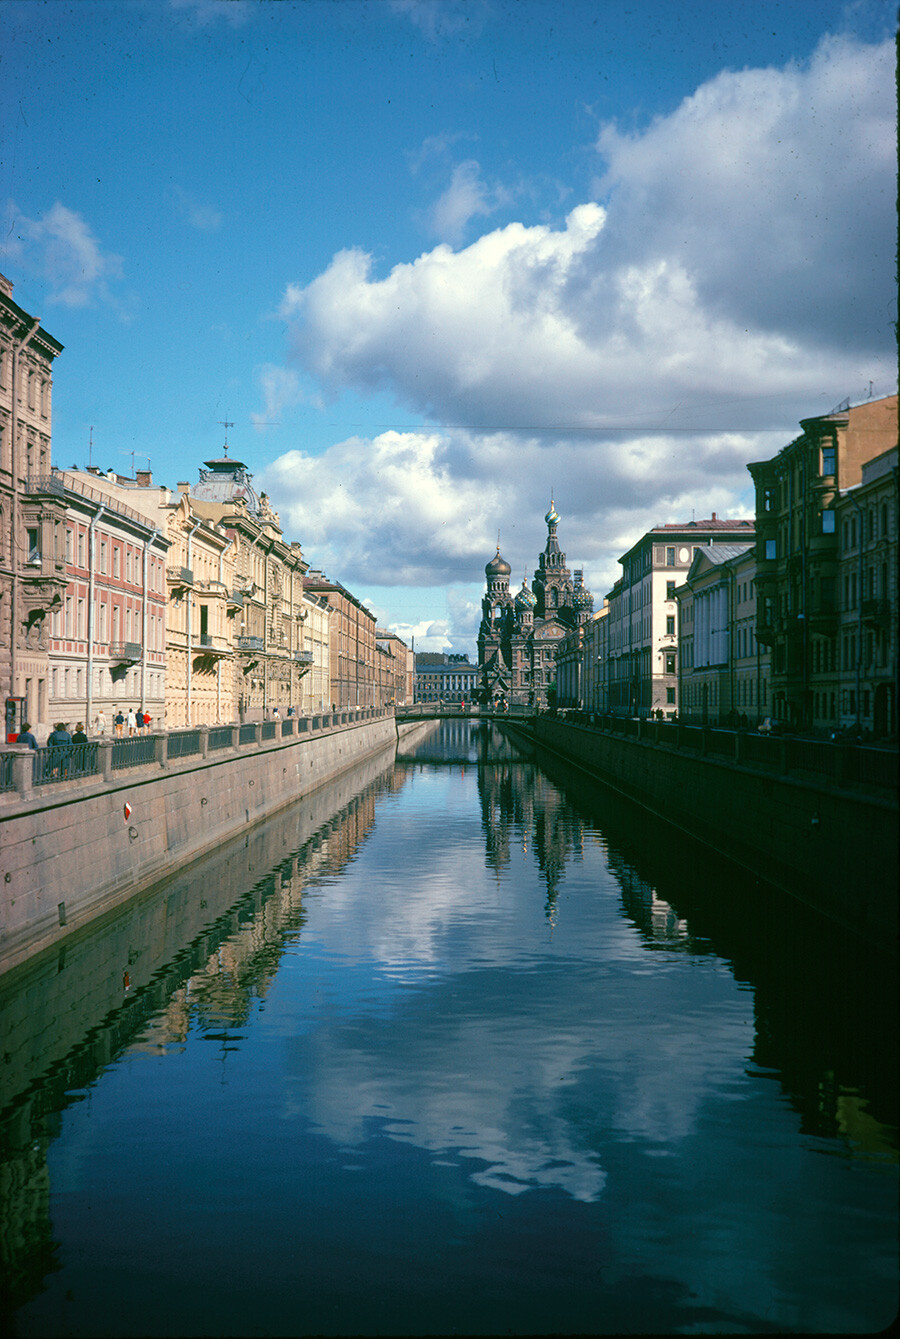 San Pietroburgo. Canale Griboedov. 8 settembre 1971
